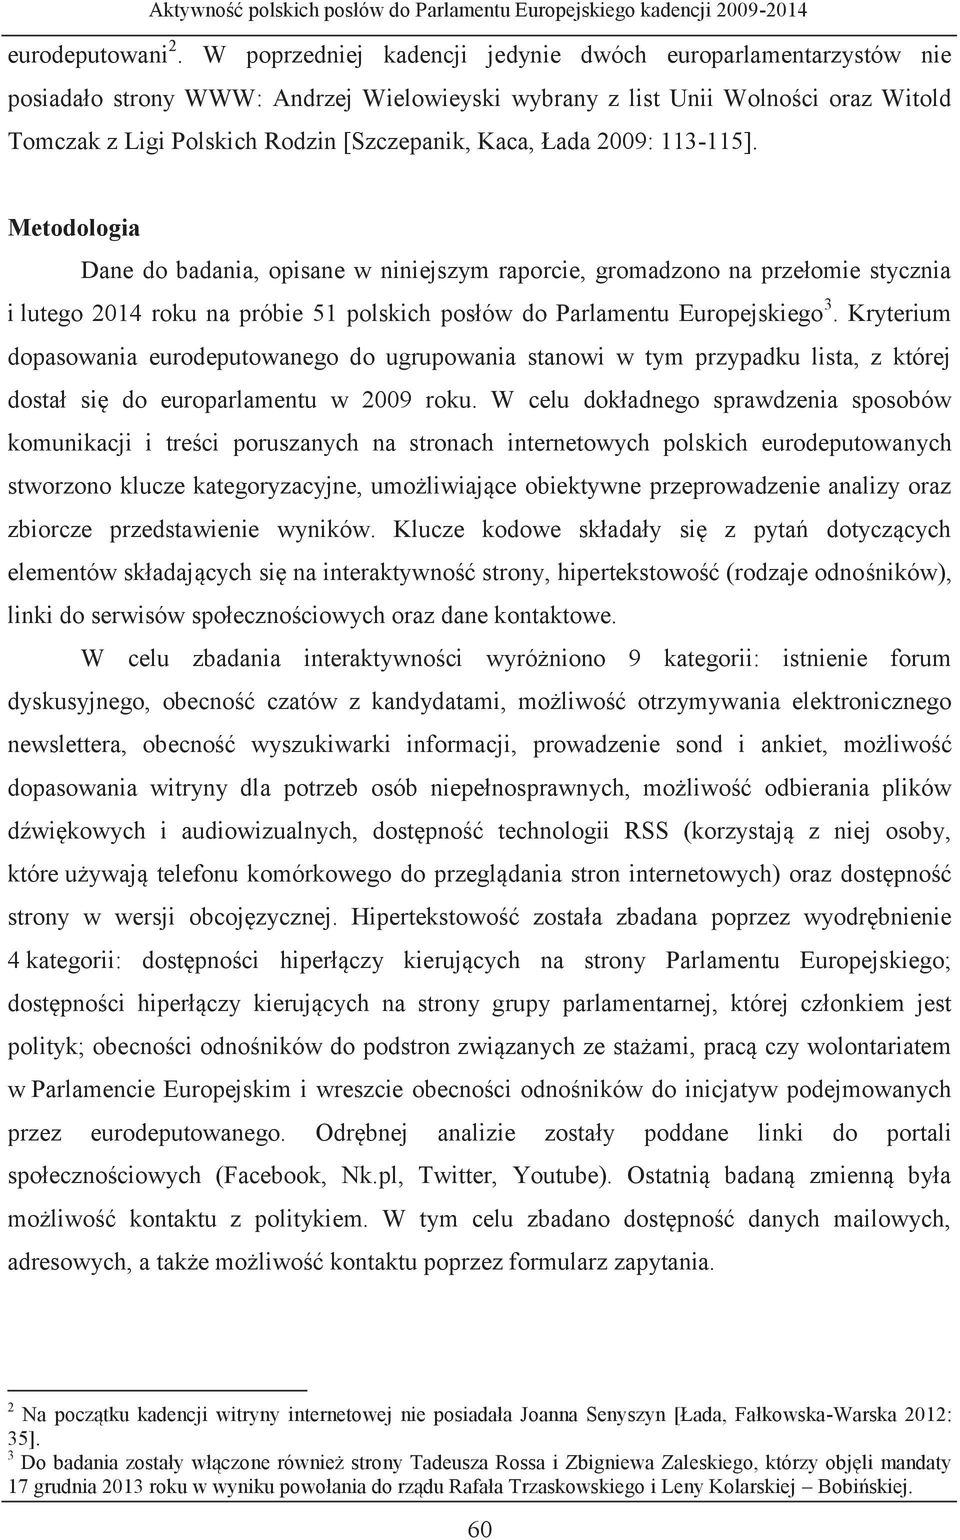 Łada 2009: 113-115]. Metodologia Dane do badania, opisane w niniejszym raporcie, gromadzono na przełomie stycznia i lutego 2014 roku na próbie 51 polskich posłów do Parlamentu Europejskiego 3.